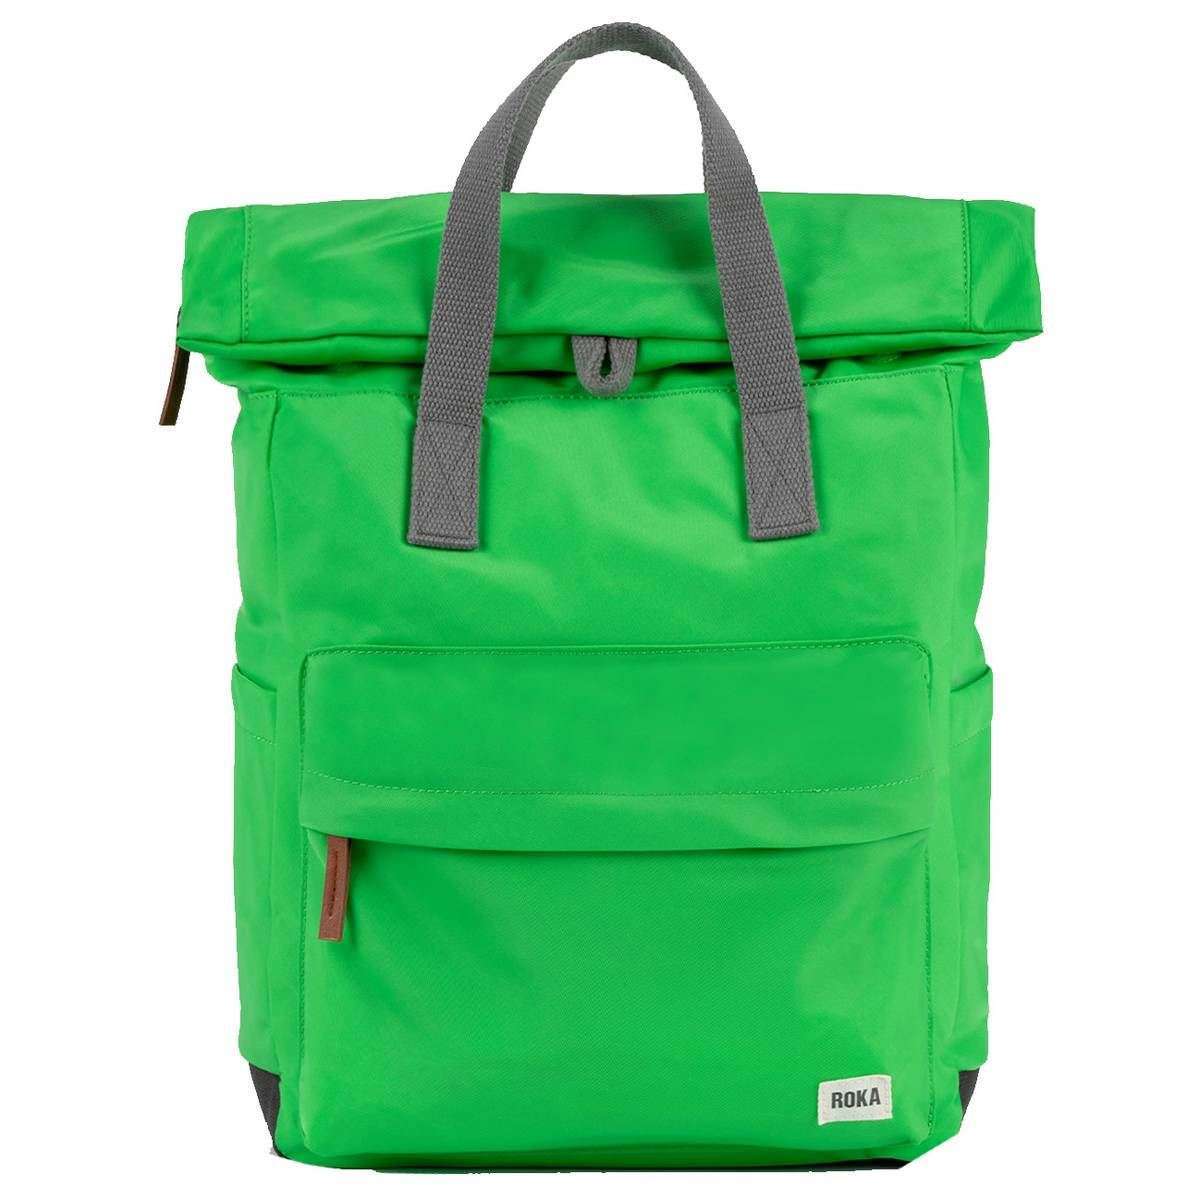 Roka Canfield B Medium Sustainable Nylon Backpack - Kelly Green